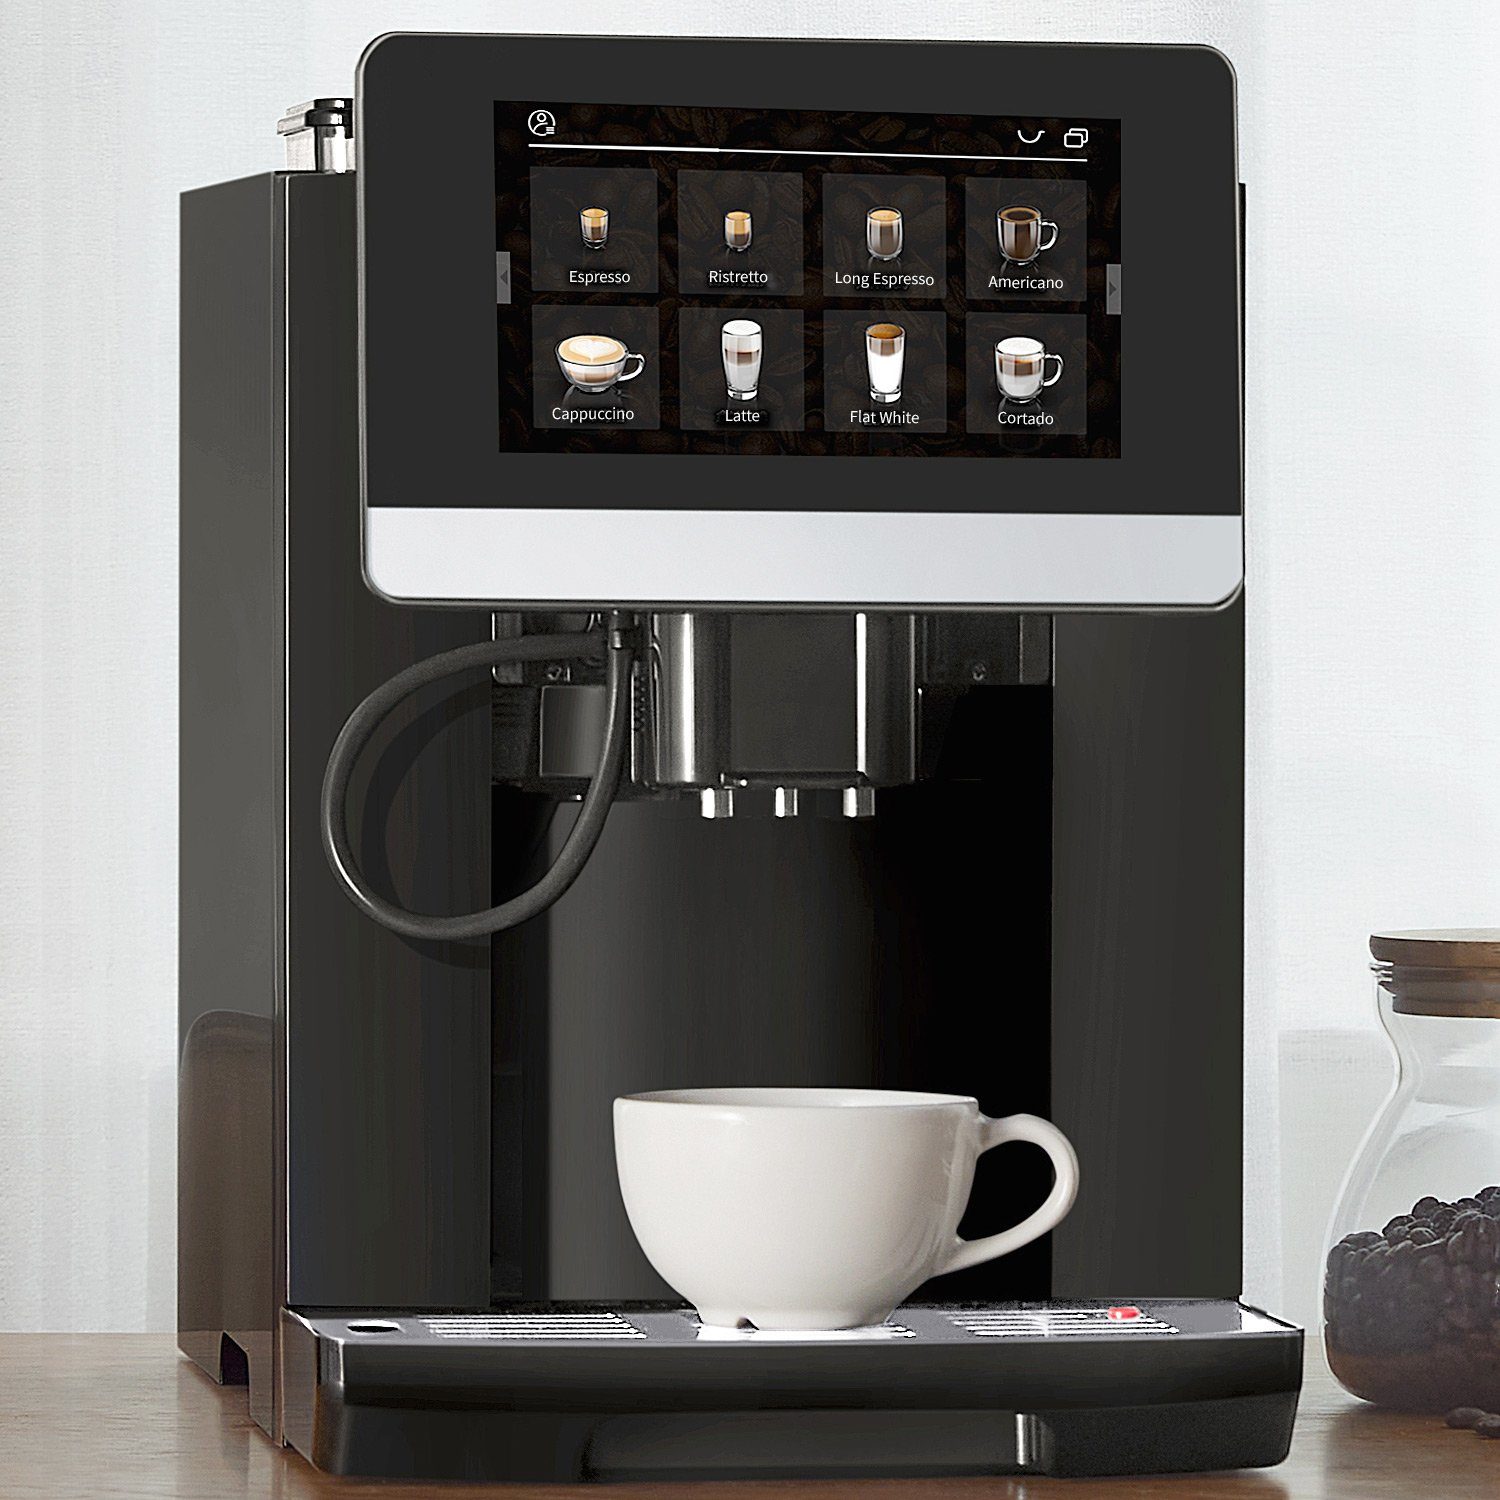 Kaffee-Rezeptbuch, Barletta, Kaffeevollautomat Acopino Doppelkesselsystem Anthrazyt